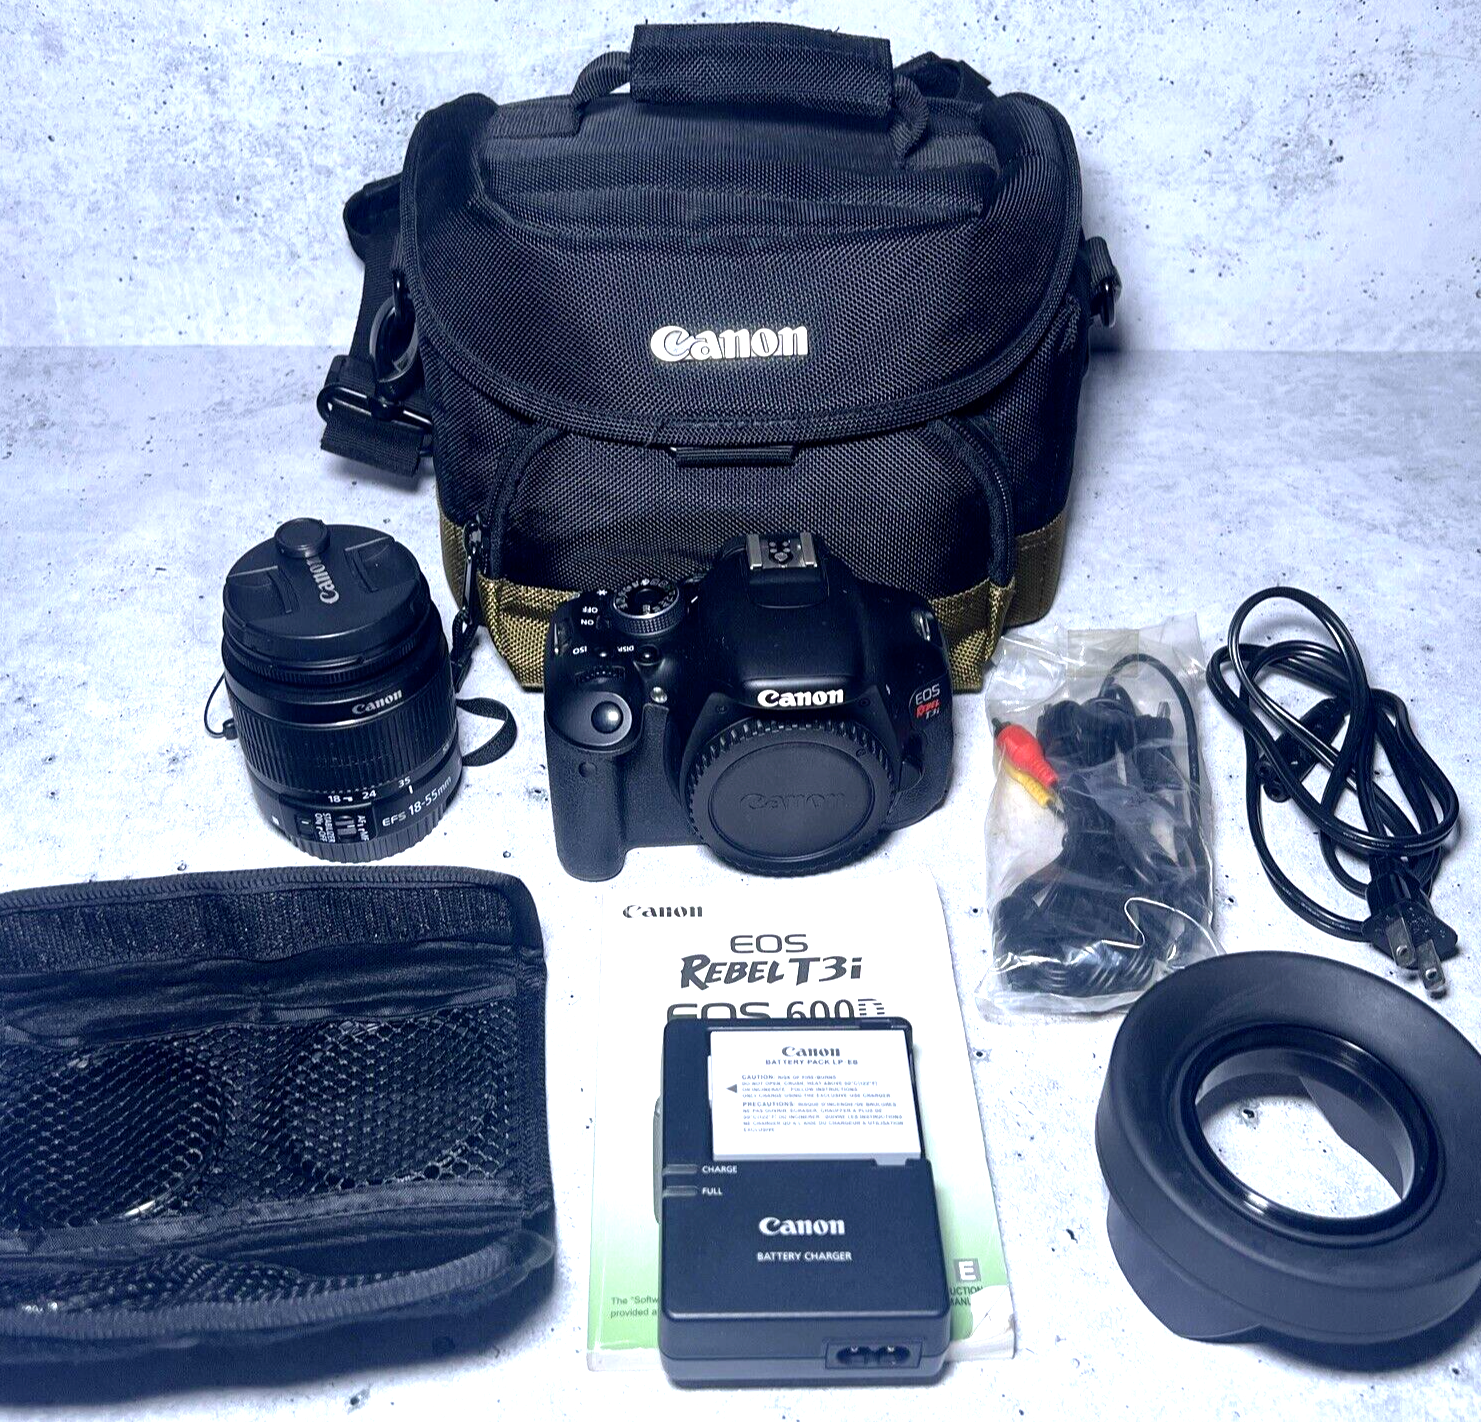 Canon EOS Rebel T3i 18MP DSLR EF-S IS II 18-55mm IS II Lens Complete Kit 1296 SC - $297.92